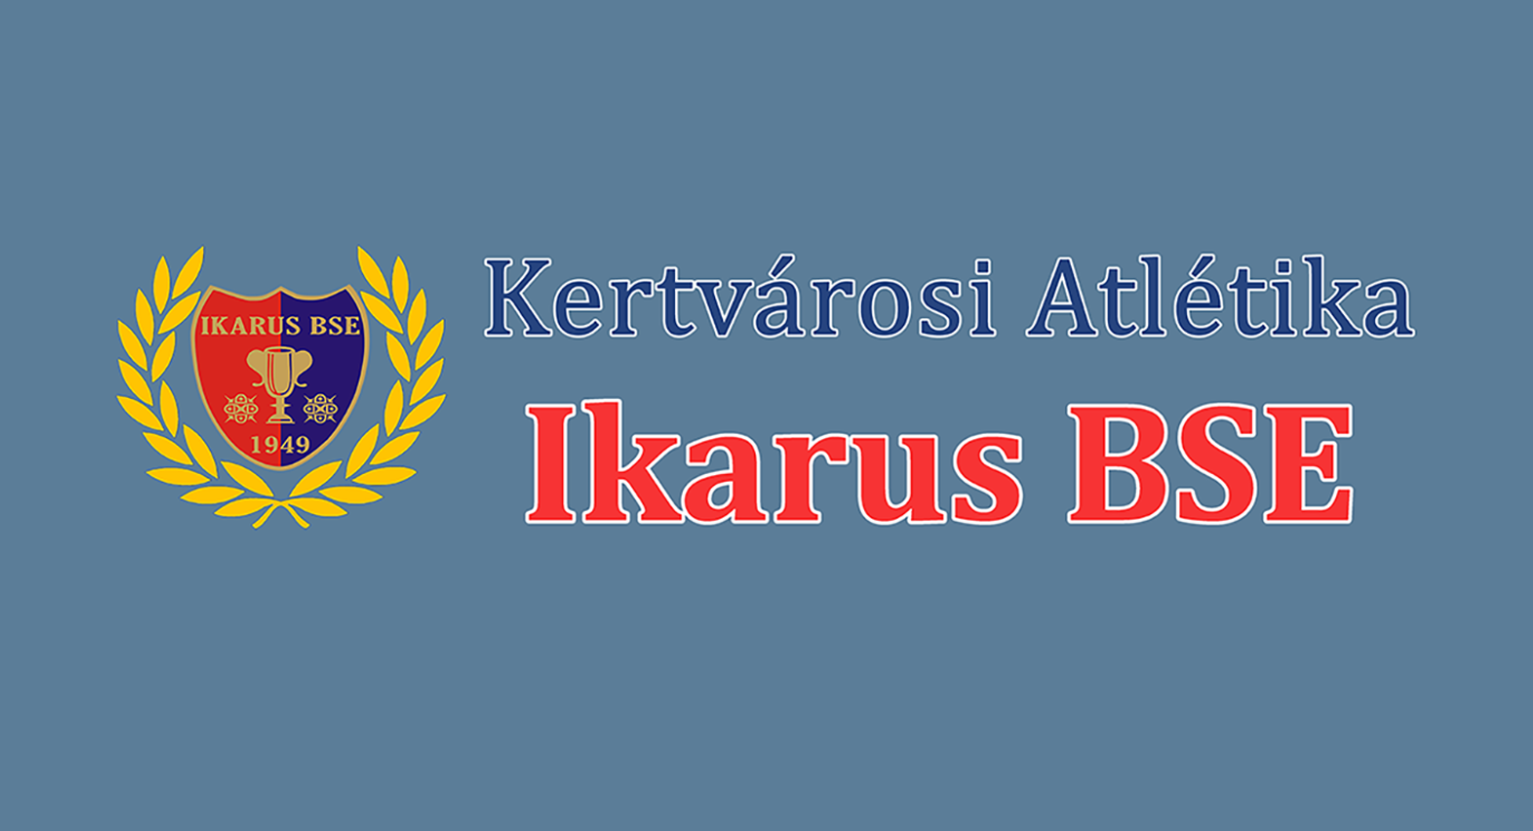 A MEDITOP Gyógyszeripari Kft. 2004 óta elkötelezett támogatója az Ikarusz Atlétika BSE sportolóinak. Az egyesületben jelenleg 400 sportoló edz 19 edző irányítása alatt.